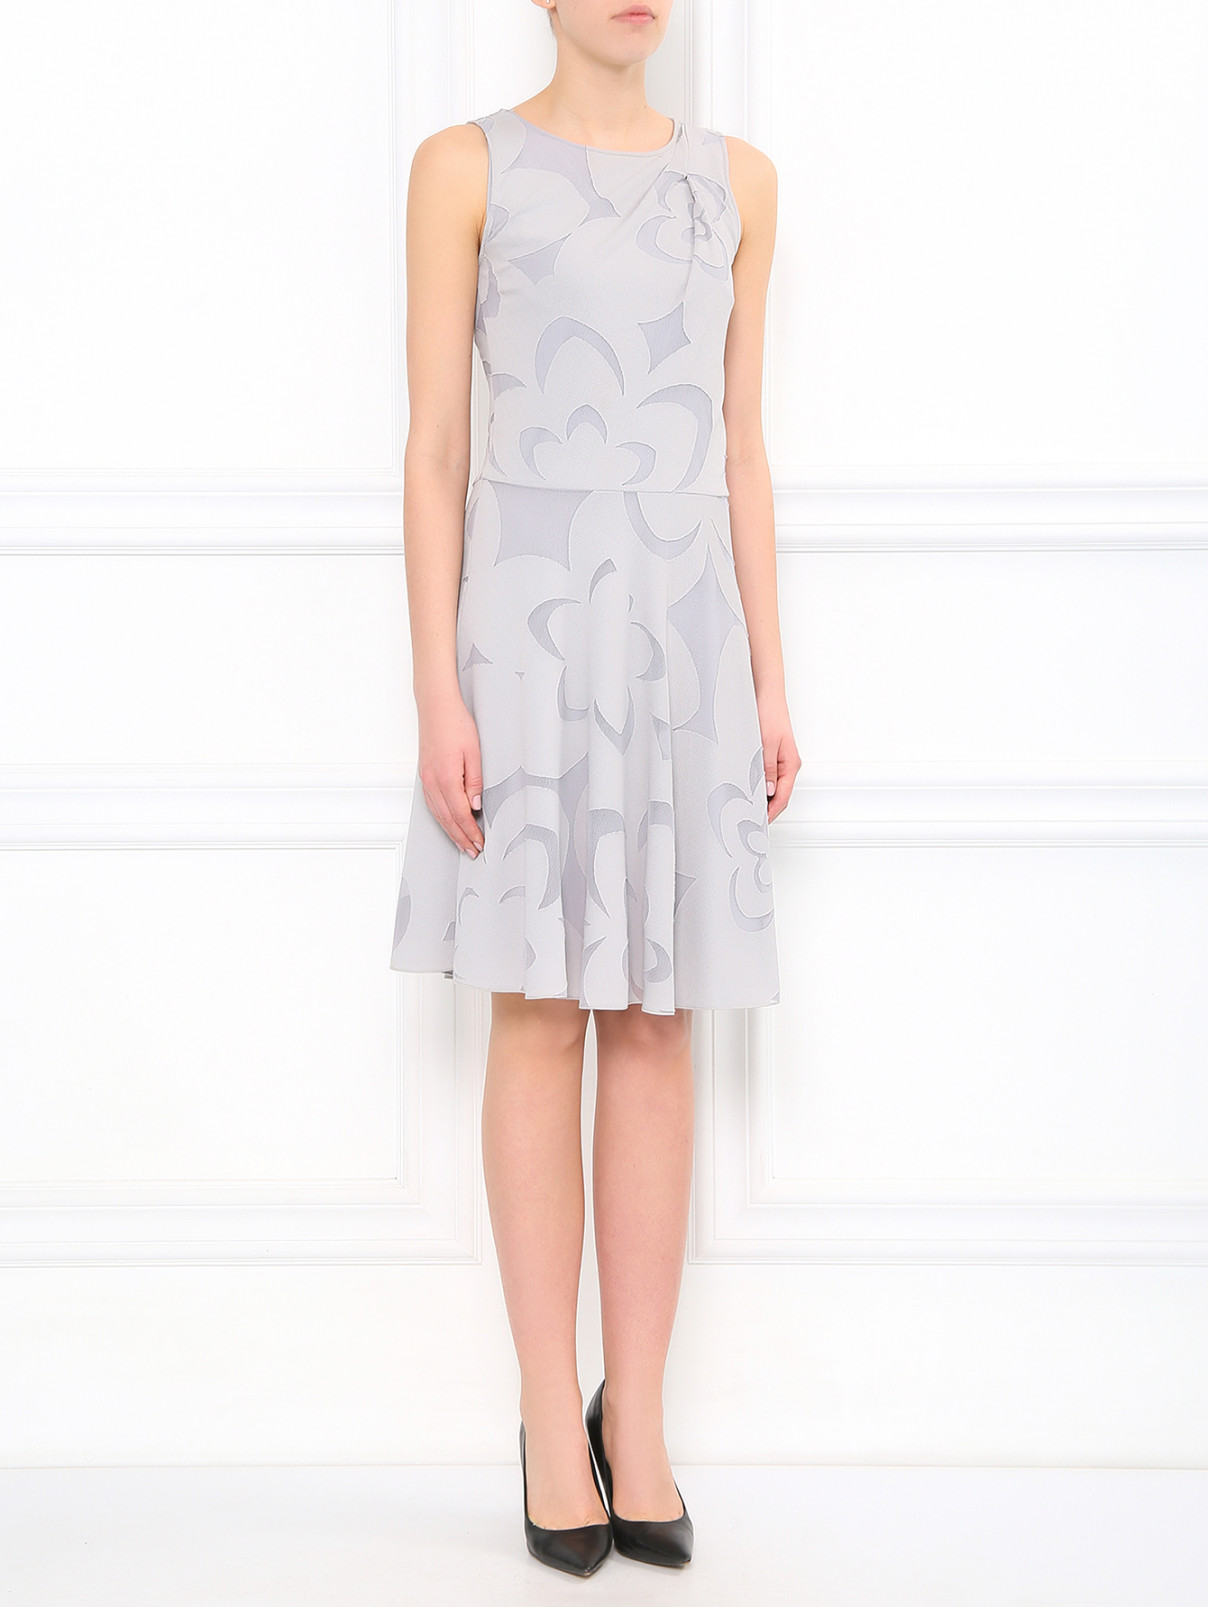 Платье с узорами Emporio Armani  –  Модель Общий вид  – Цвет:  Серый